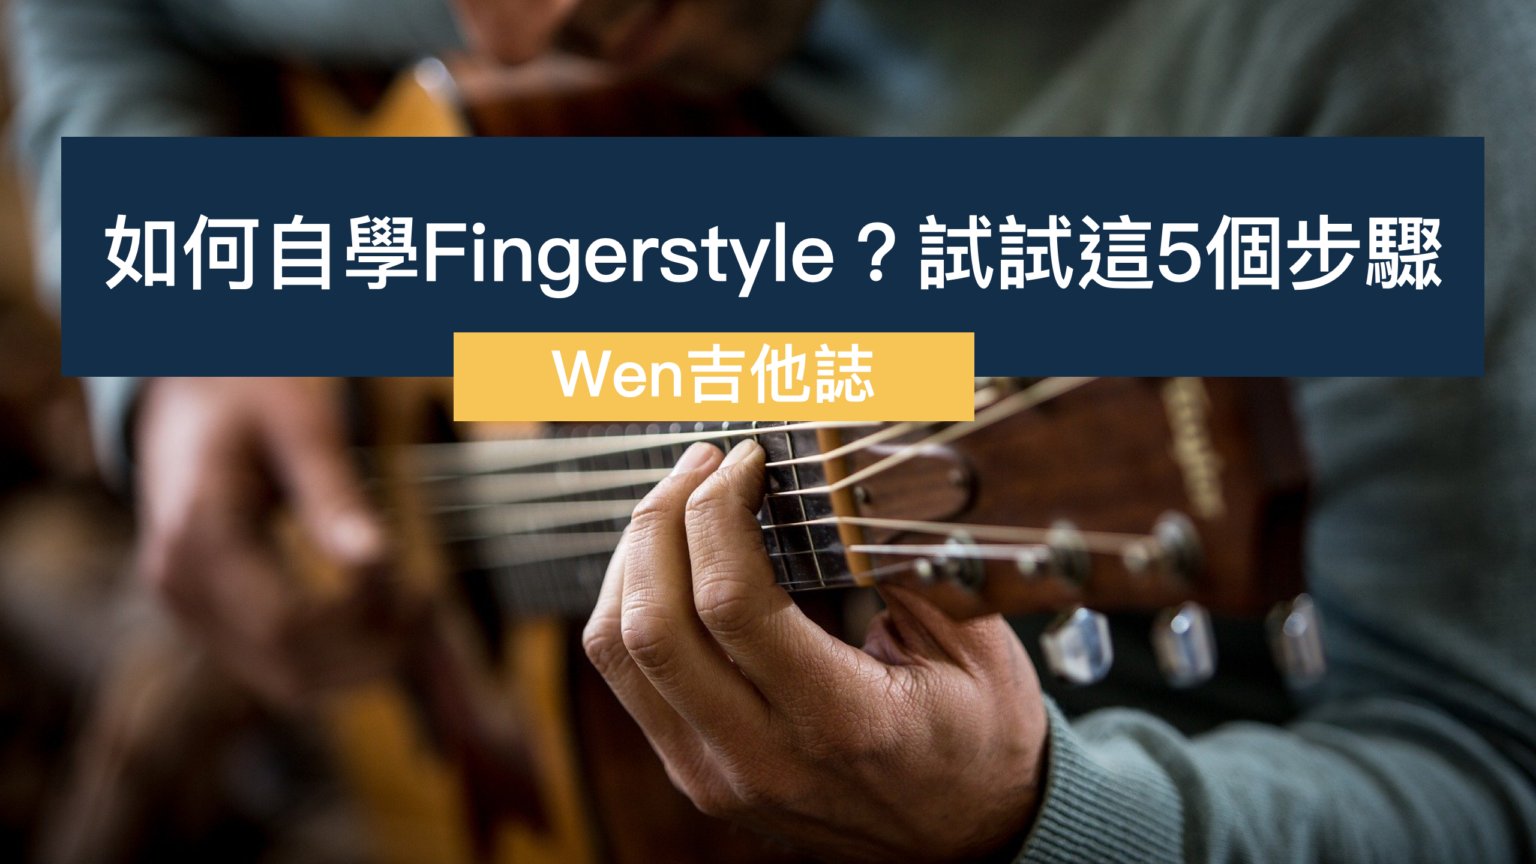 Learn fingerstyle guitar - blueskyqlero